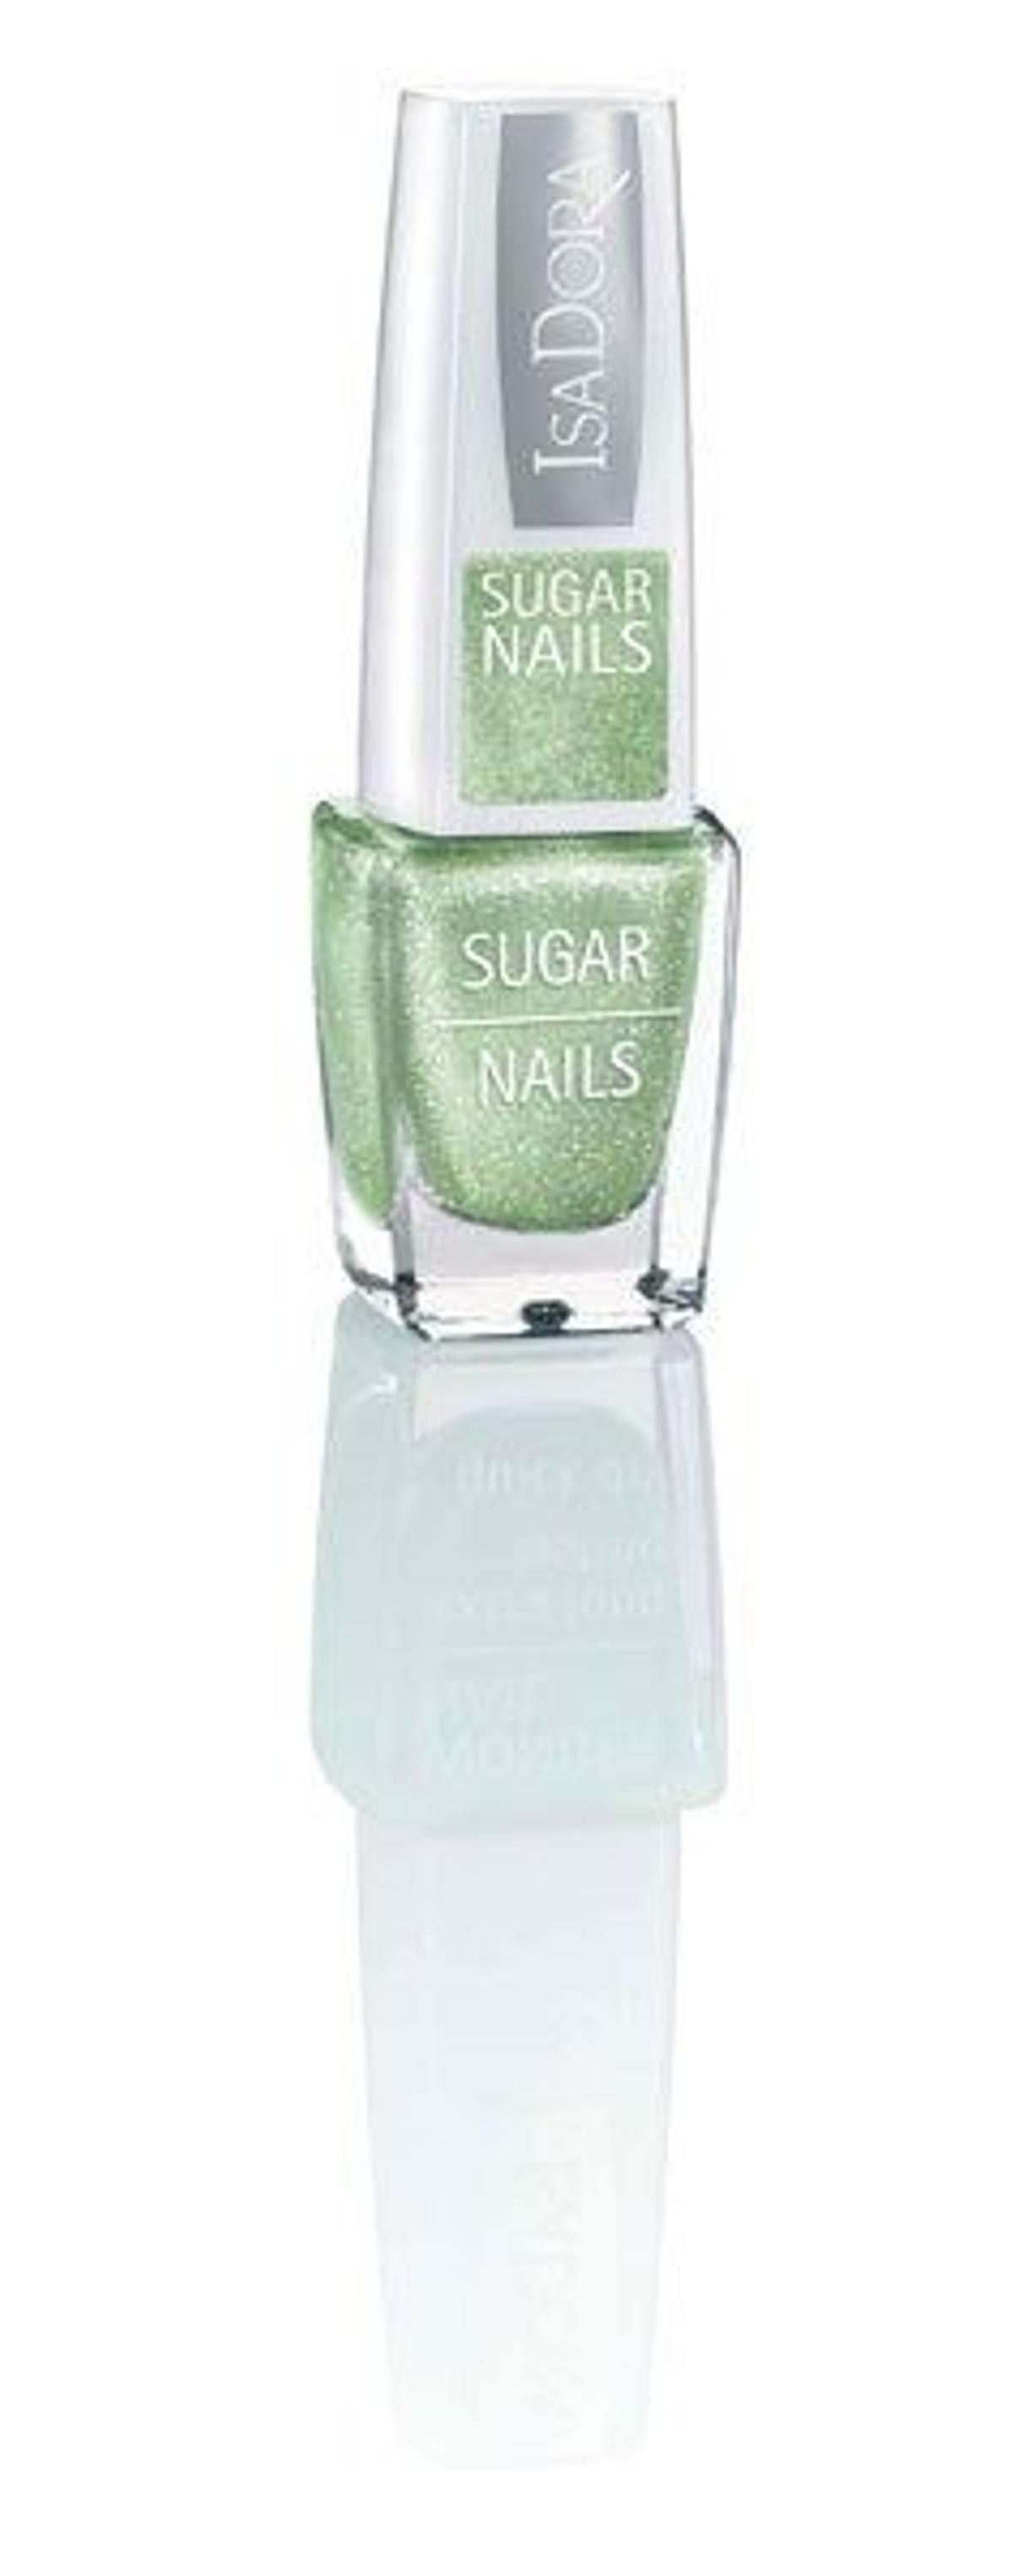 Sugar Nails, de IsaDora